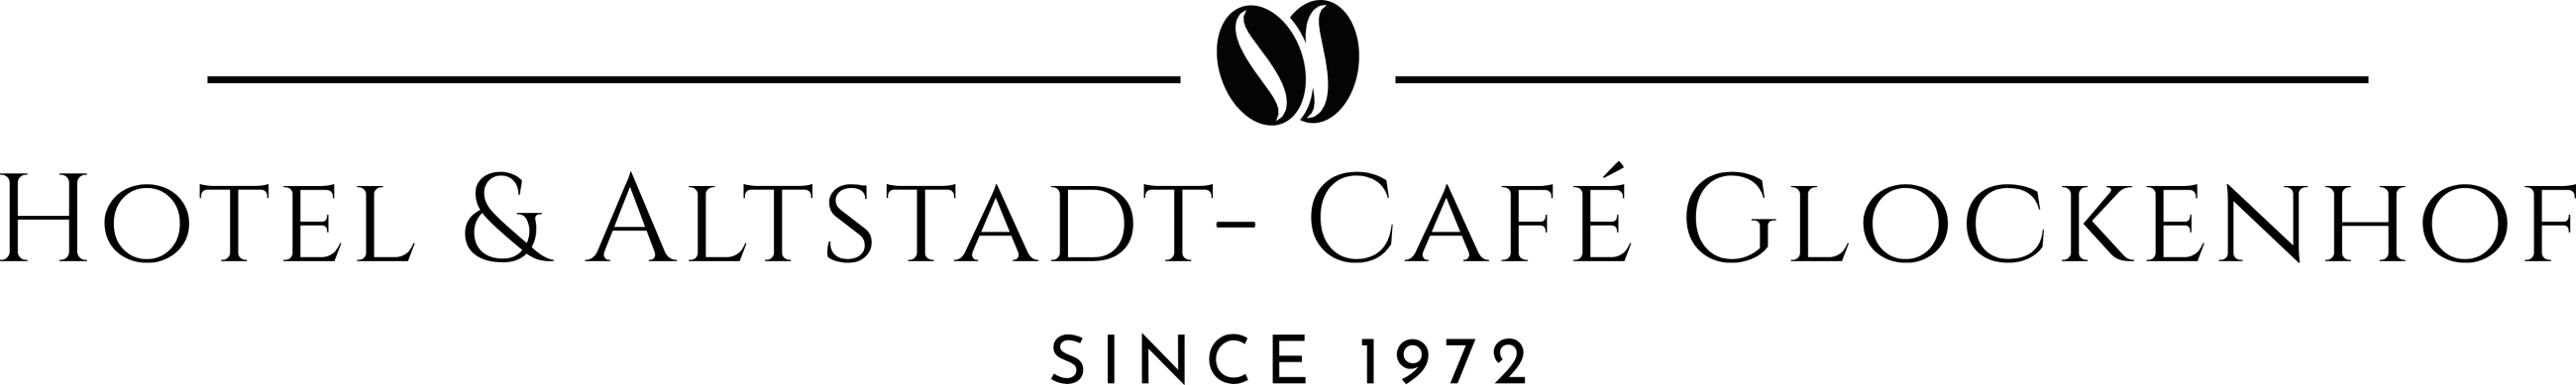 auto zeh-logo